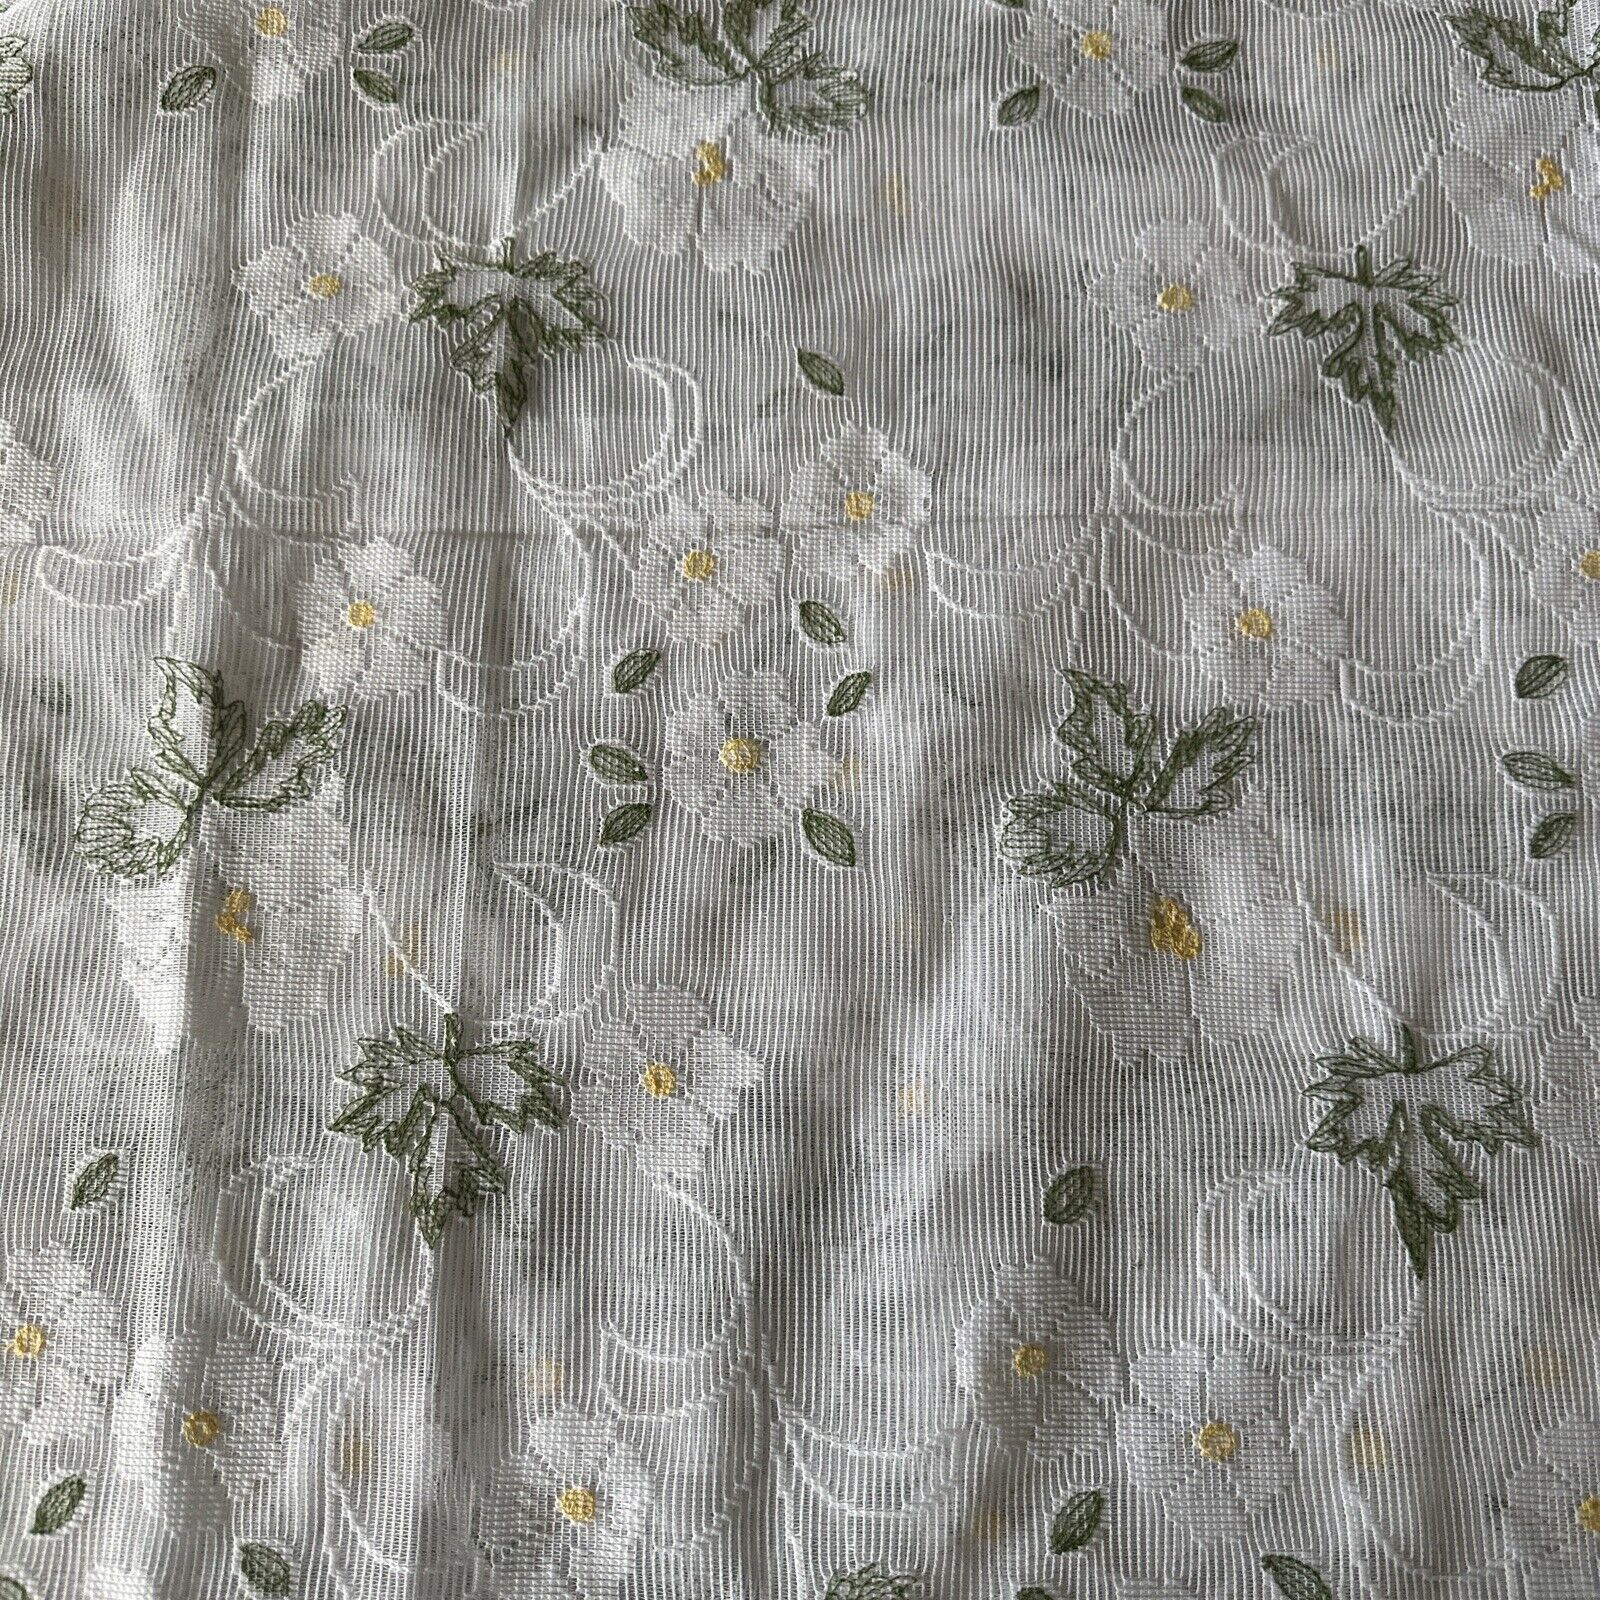 VTG White Lace Curtain Floral NEW NOS Cottage Farmhouse 60”x84”